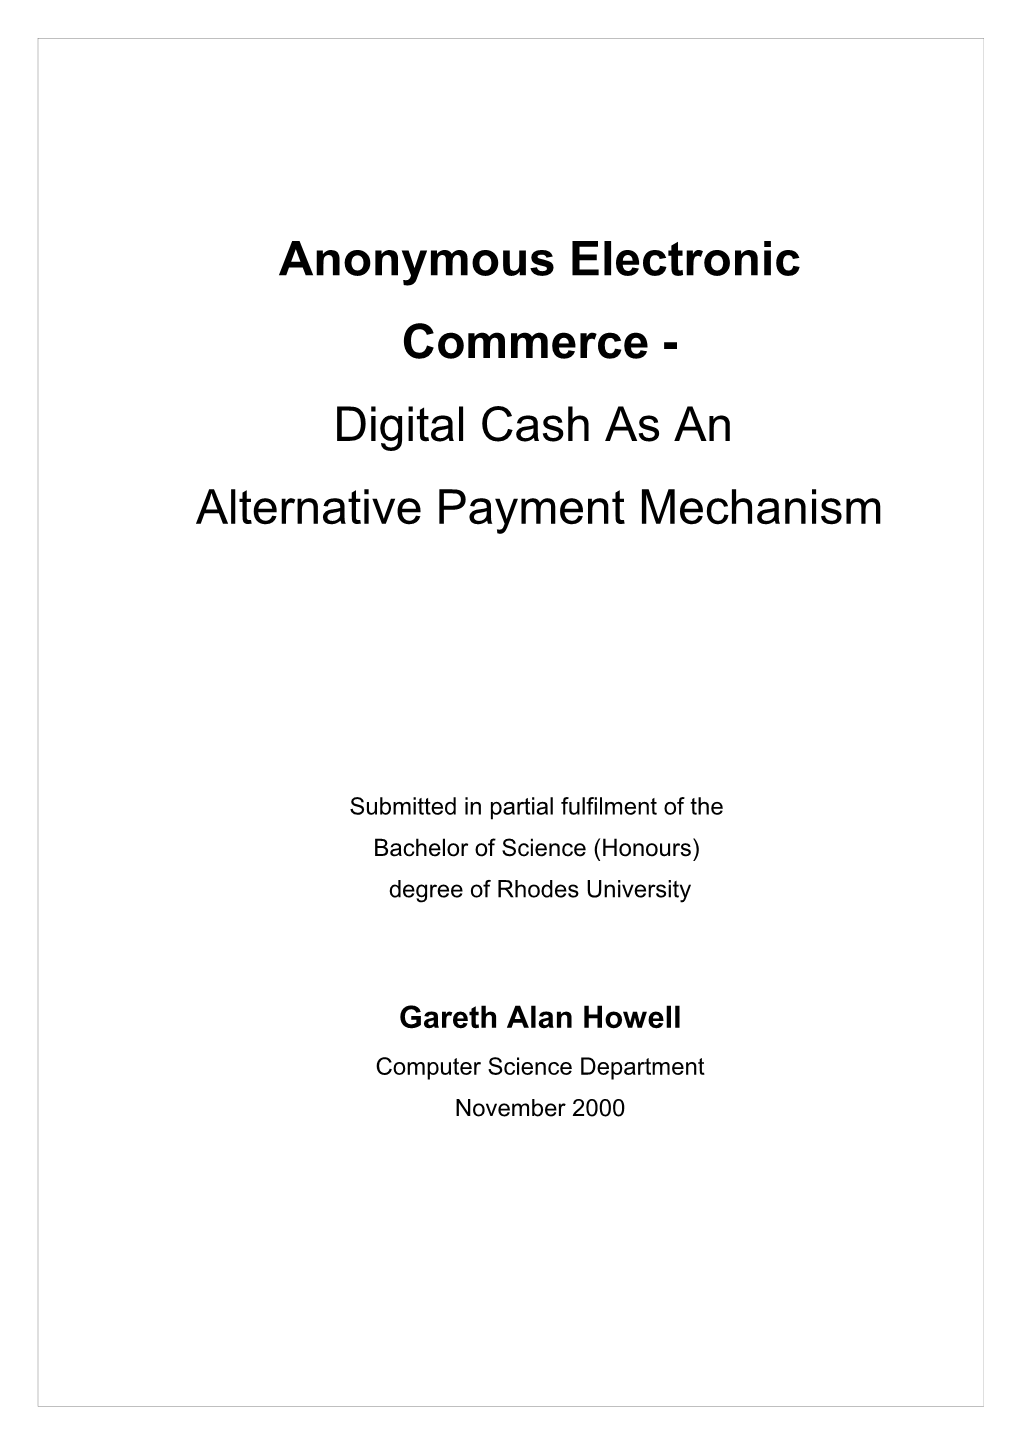 Digital Cash As an Alternate Payment Mechanism